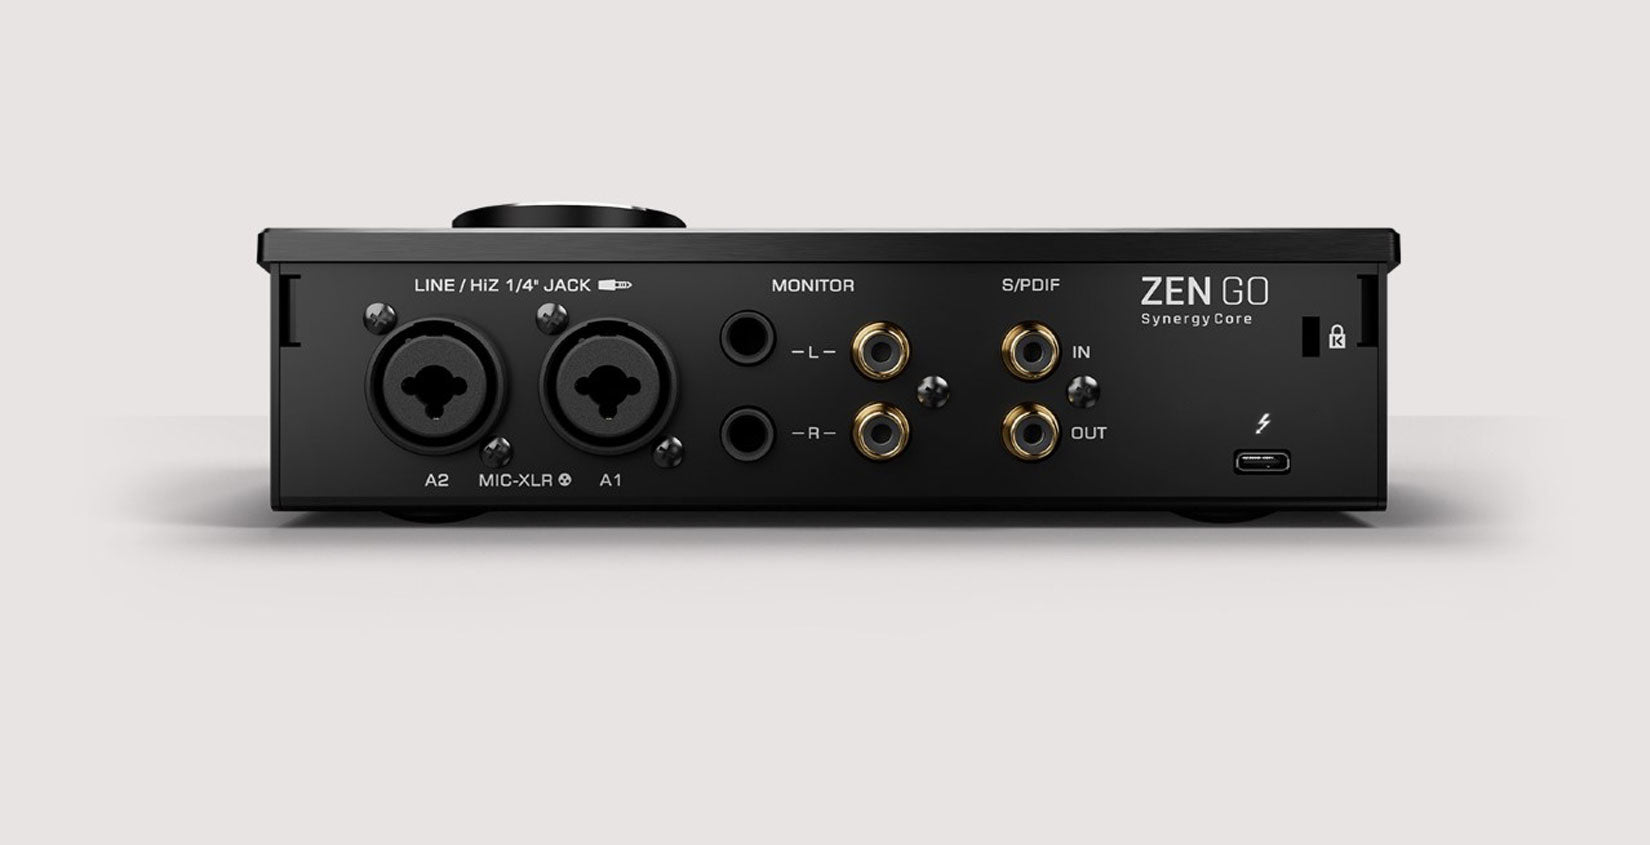 Antelope Audio ZEN GO Synergy Core